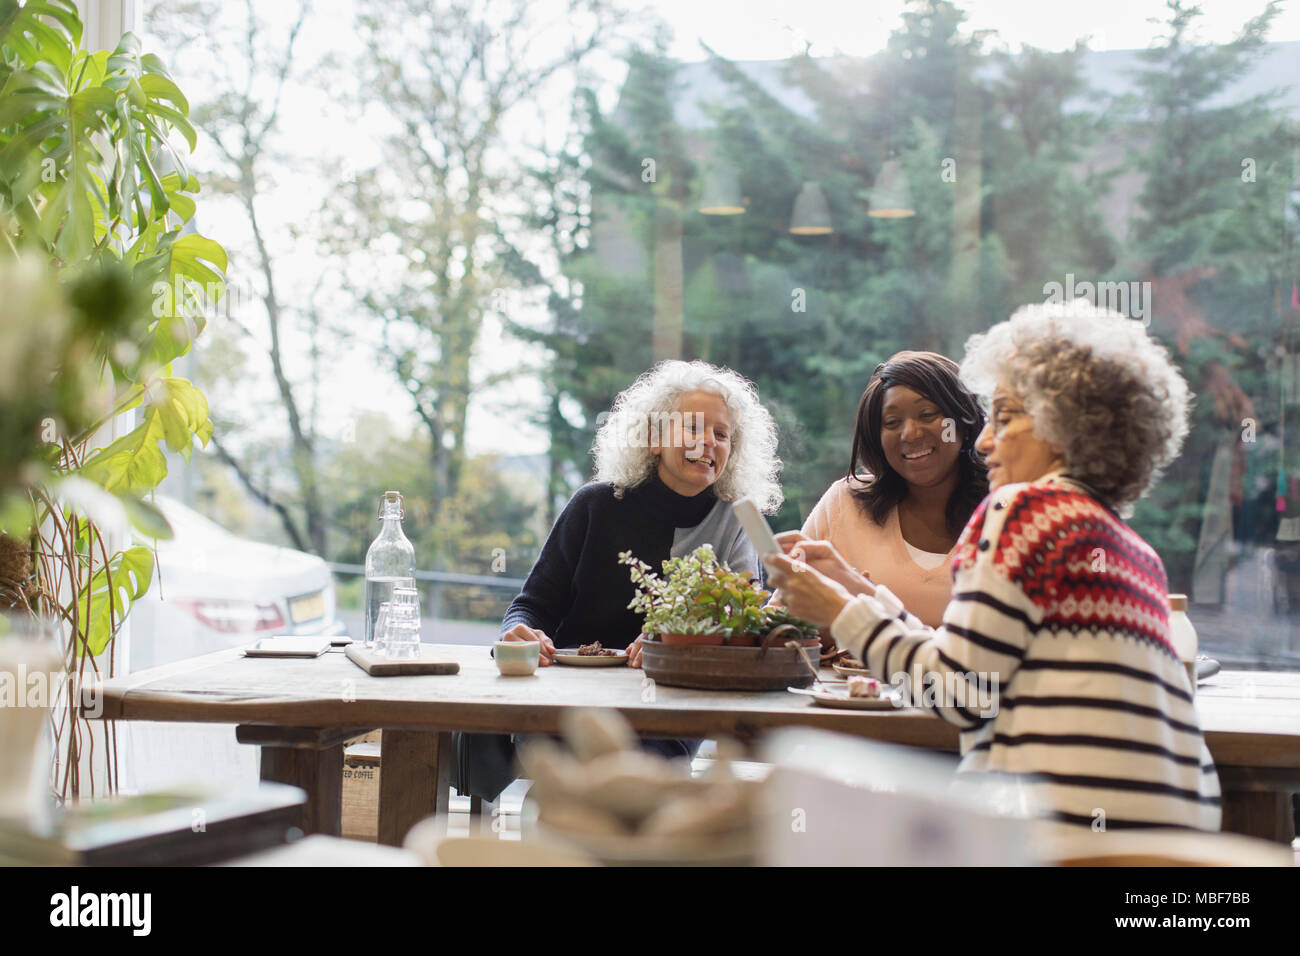 Smiling women amis à l'aide de smart phone at cafe table Banque D'Images